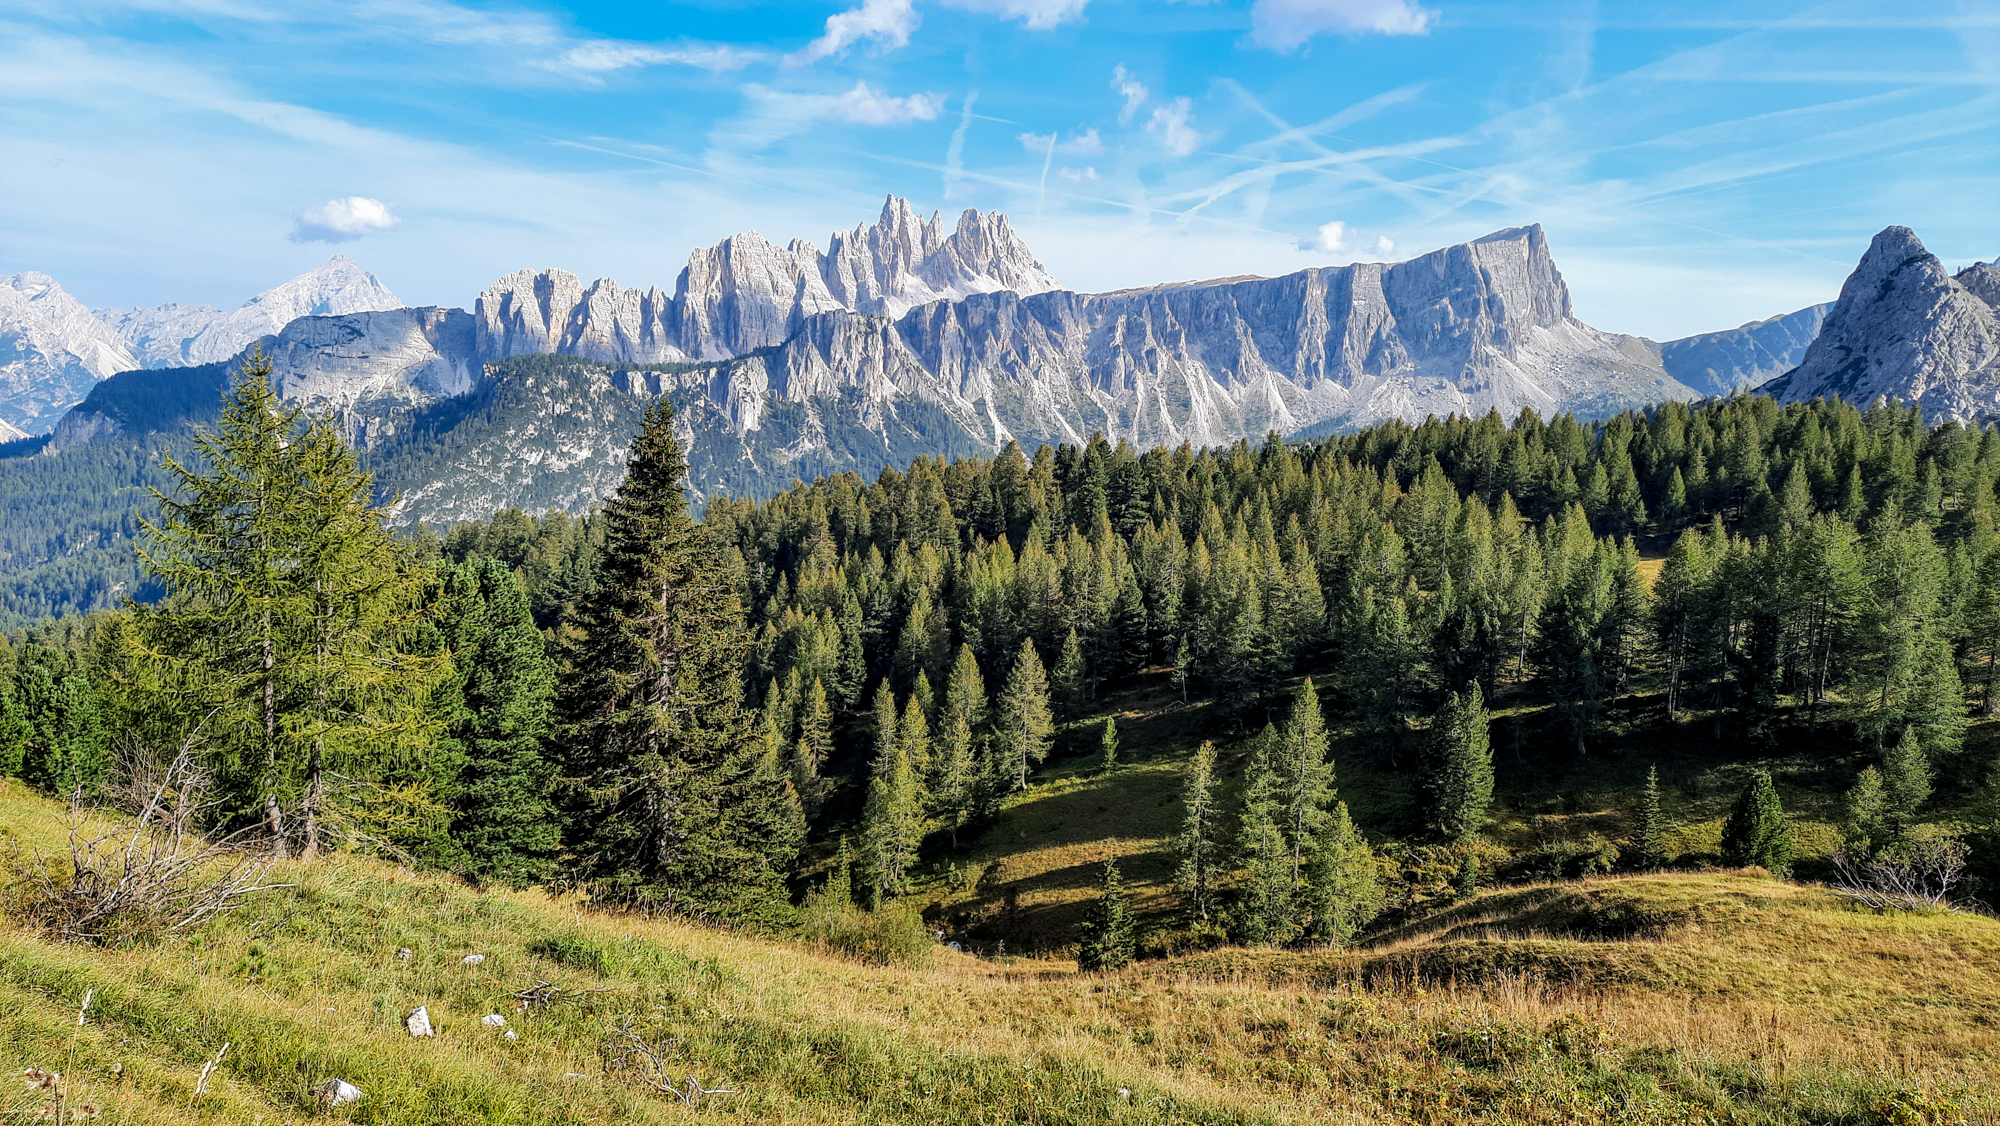 Pri stúpaní k Cinque Torri sa objavujú nádherné výhľady, napríklad na vrch Cima Ambrizzola.